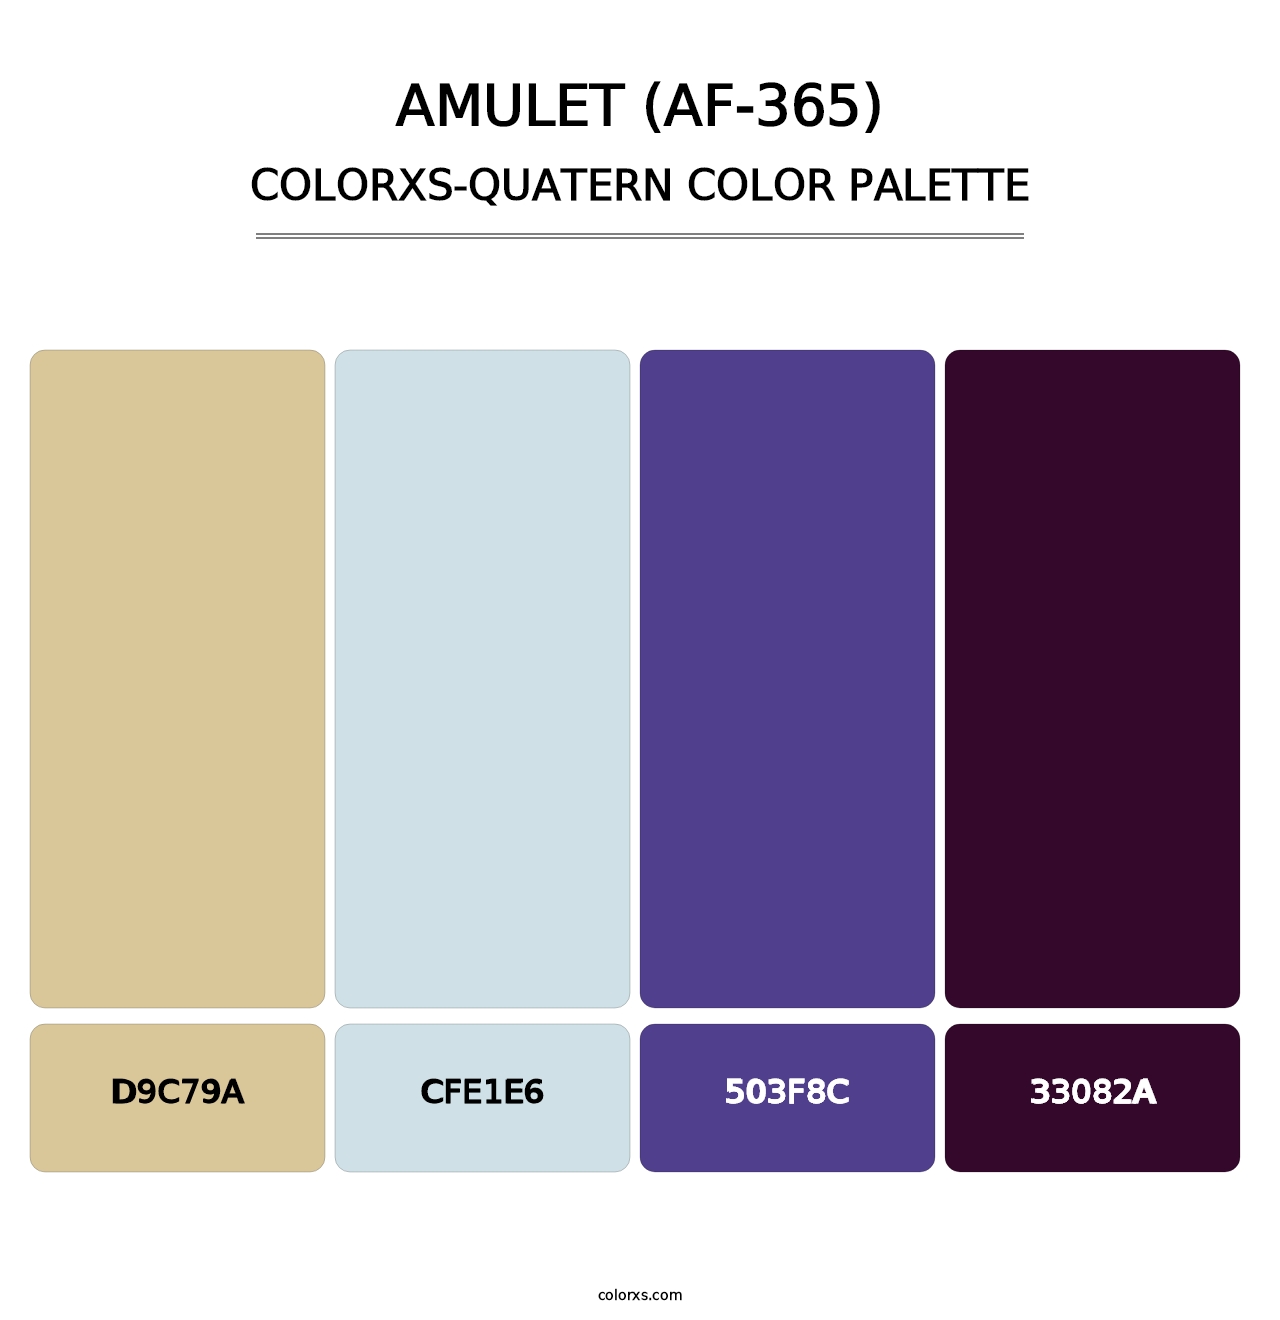 Amulet (AF-365) - Colorxs Quatern Palette